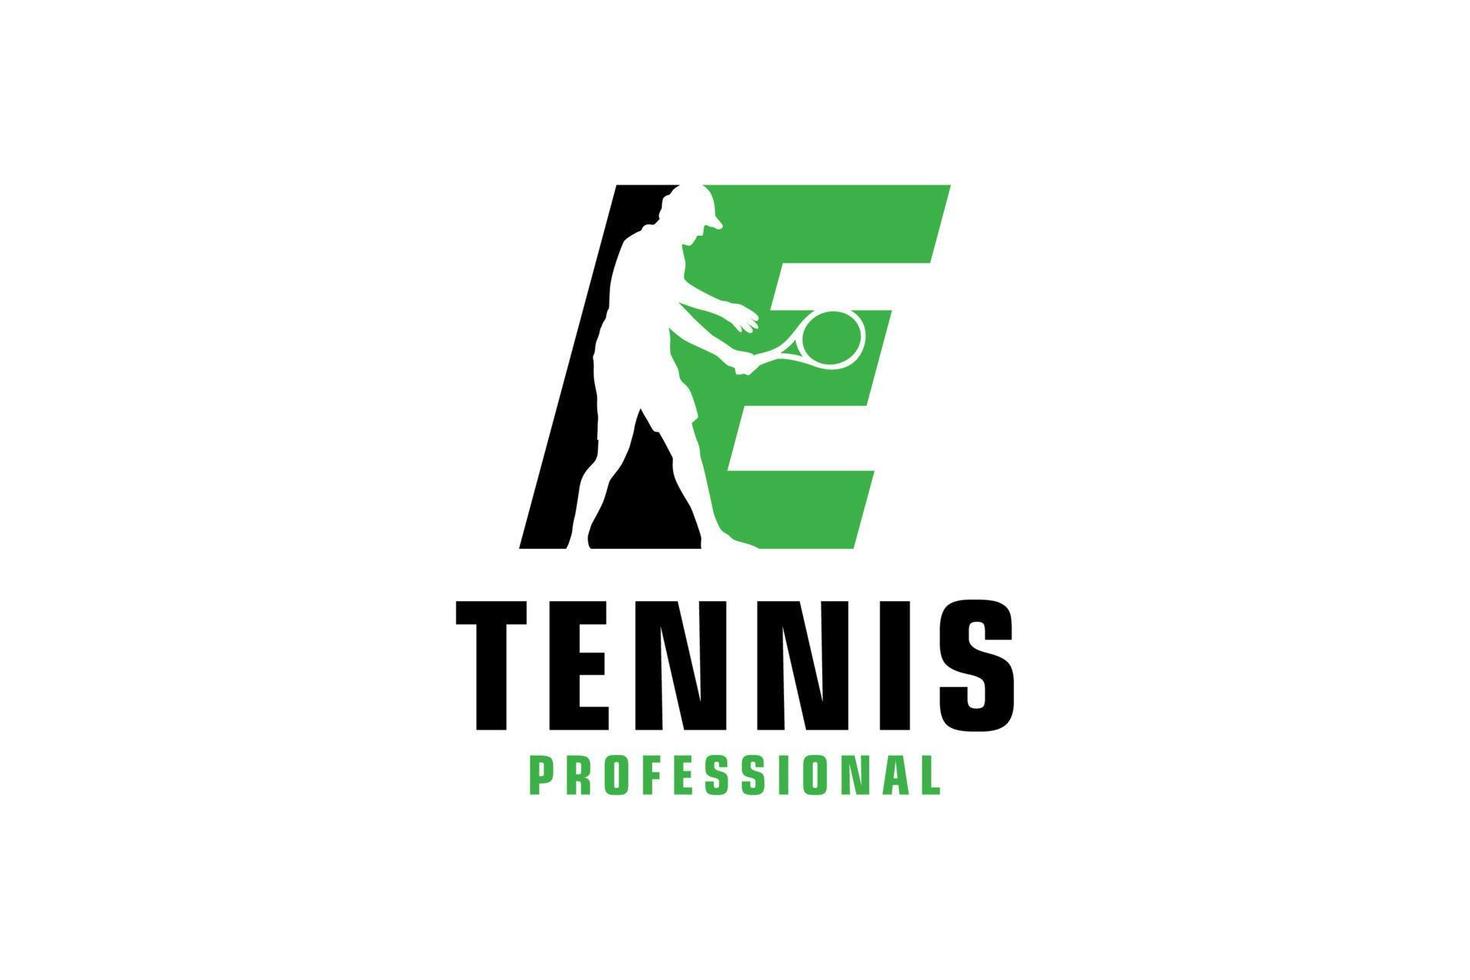 buchstabe e mit tennisspieler-silhouette-logo-design. Vektordesign-Vorlagenelemente für Sportteams oder Corporate Identity. vektor